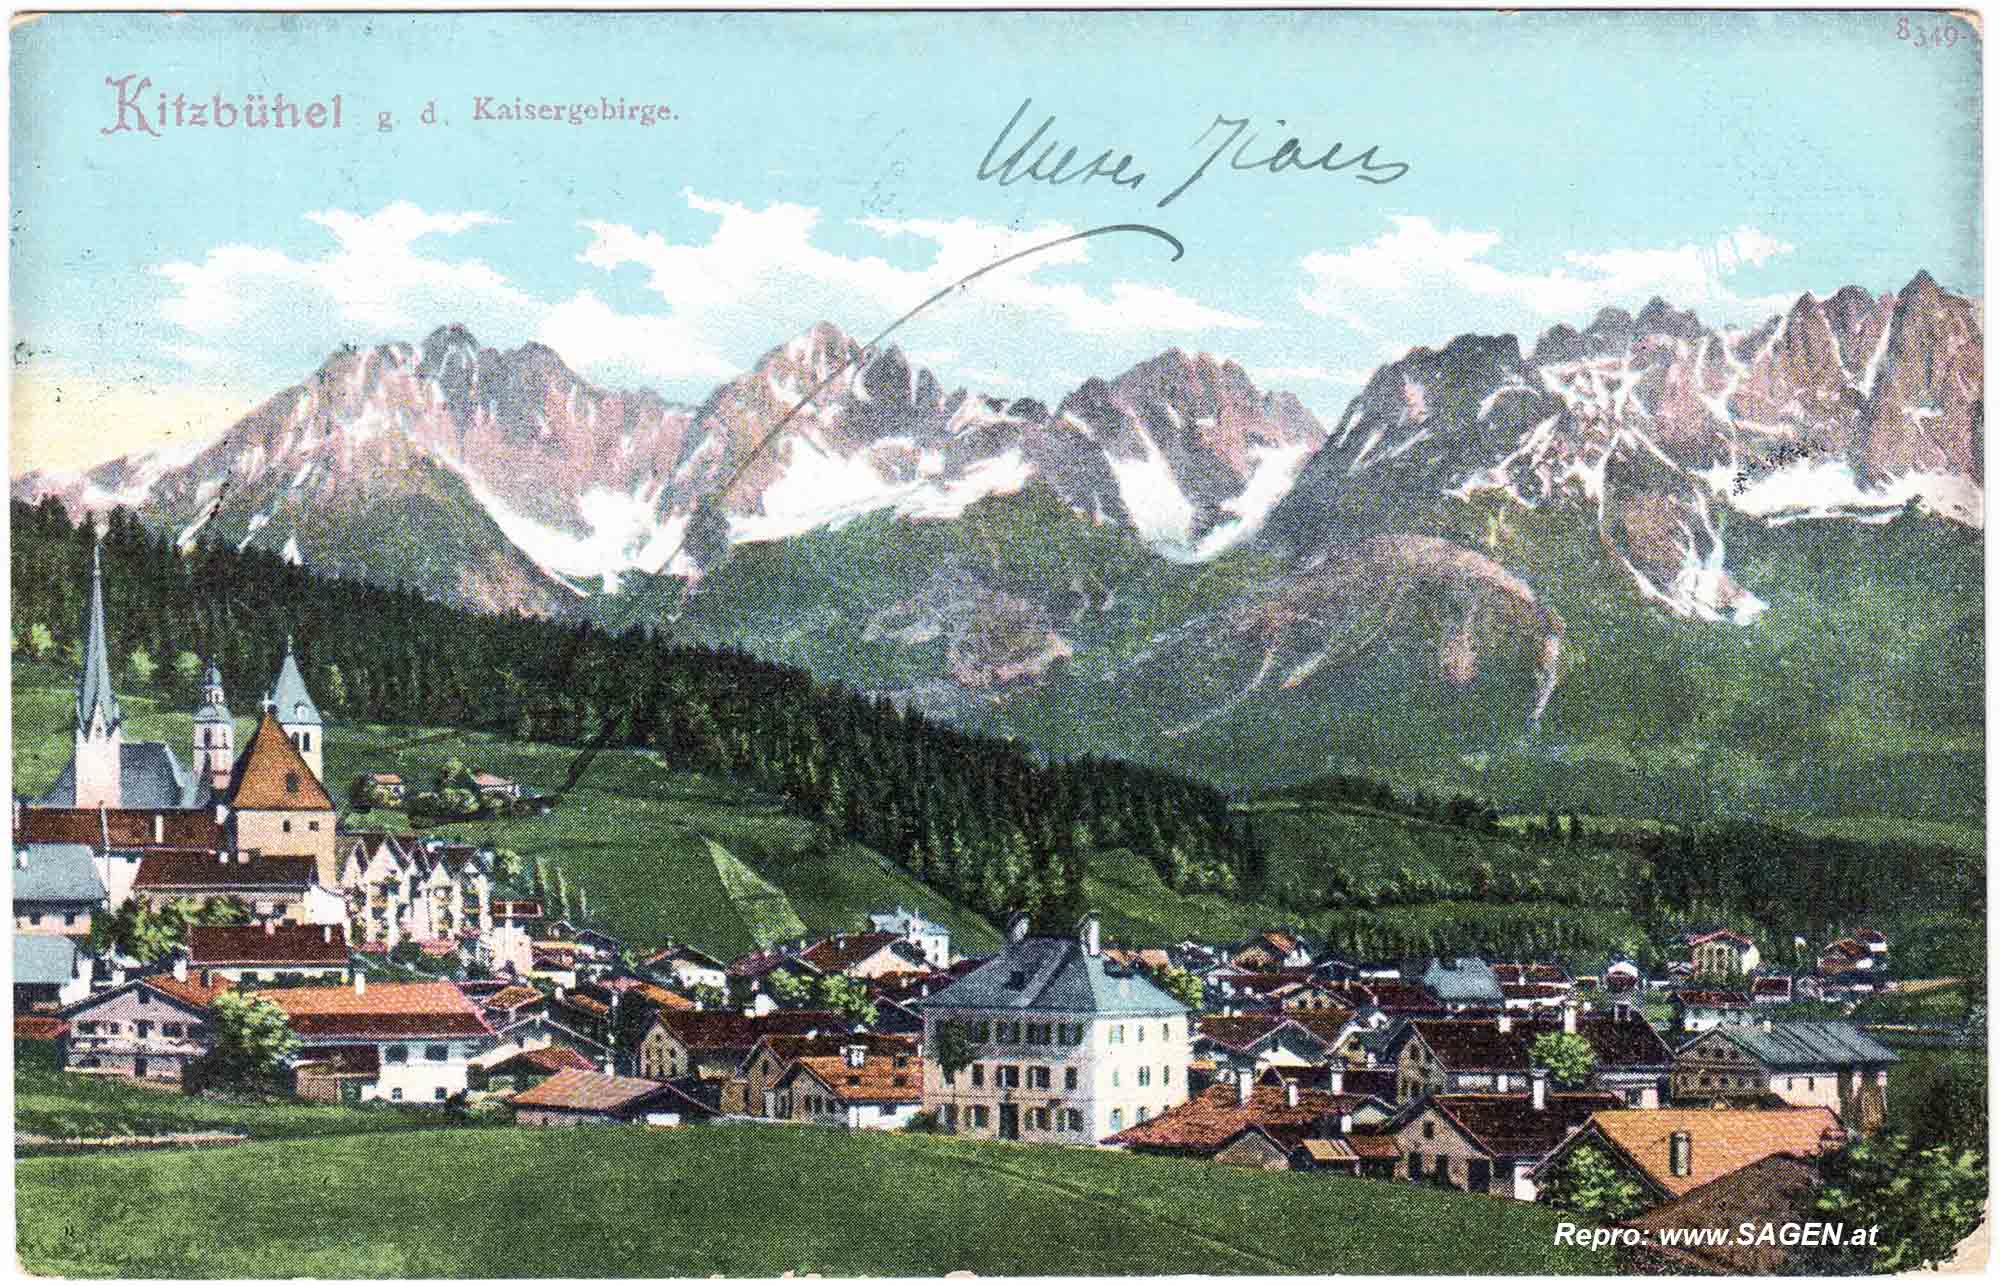 Kitzbühel gegen das Kaisergebirge.